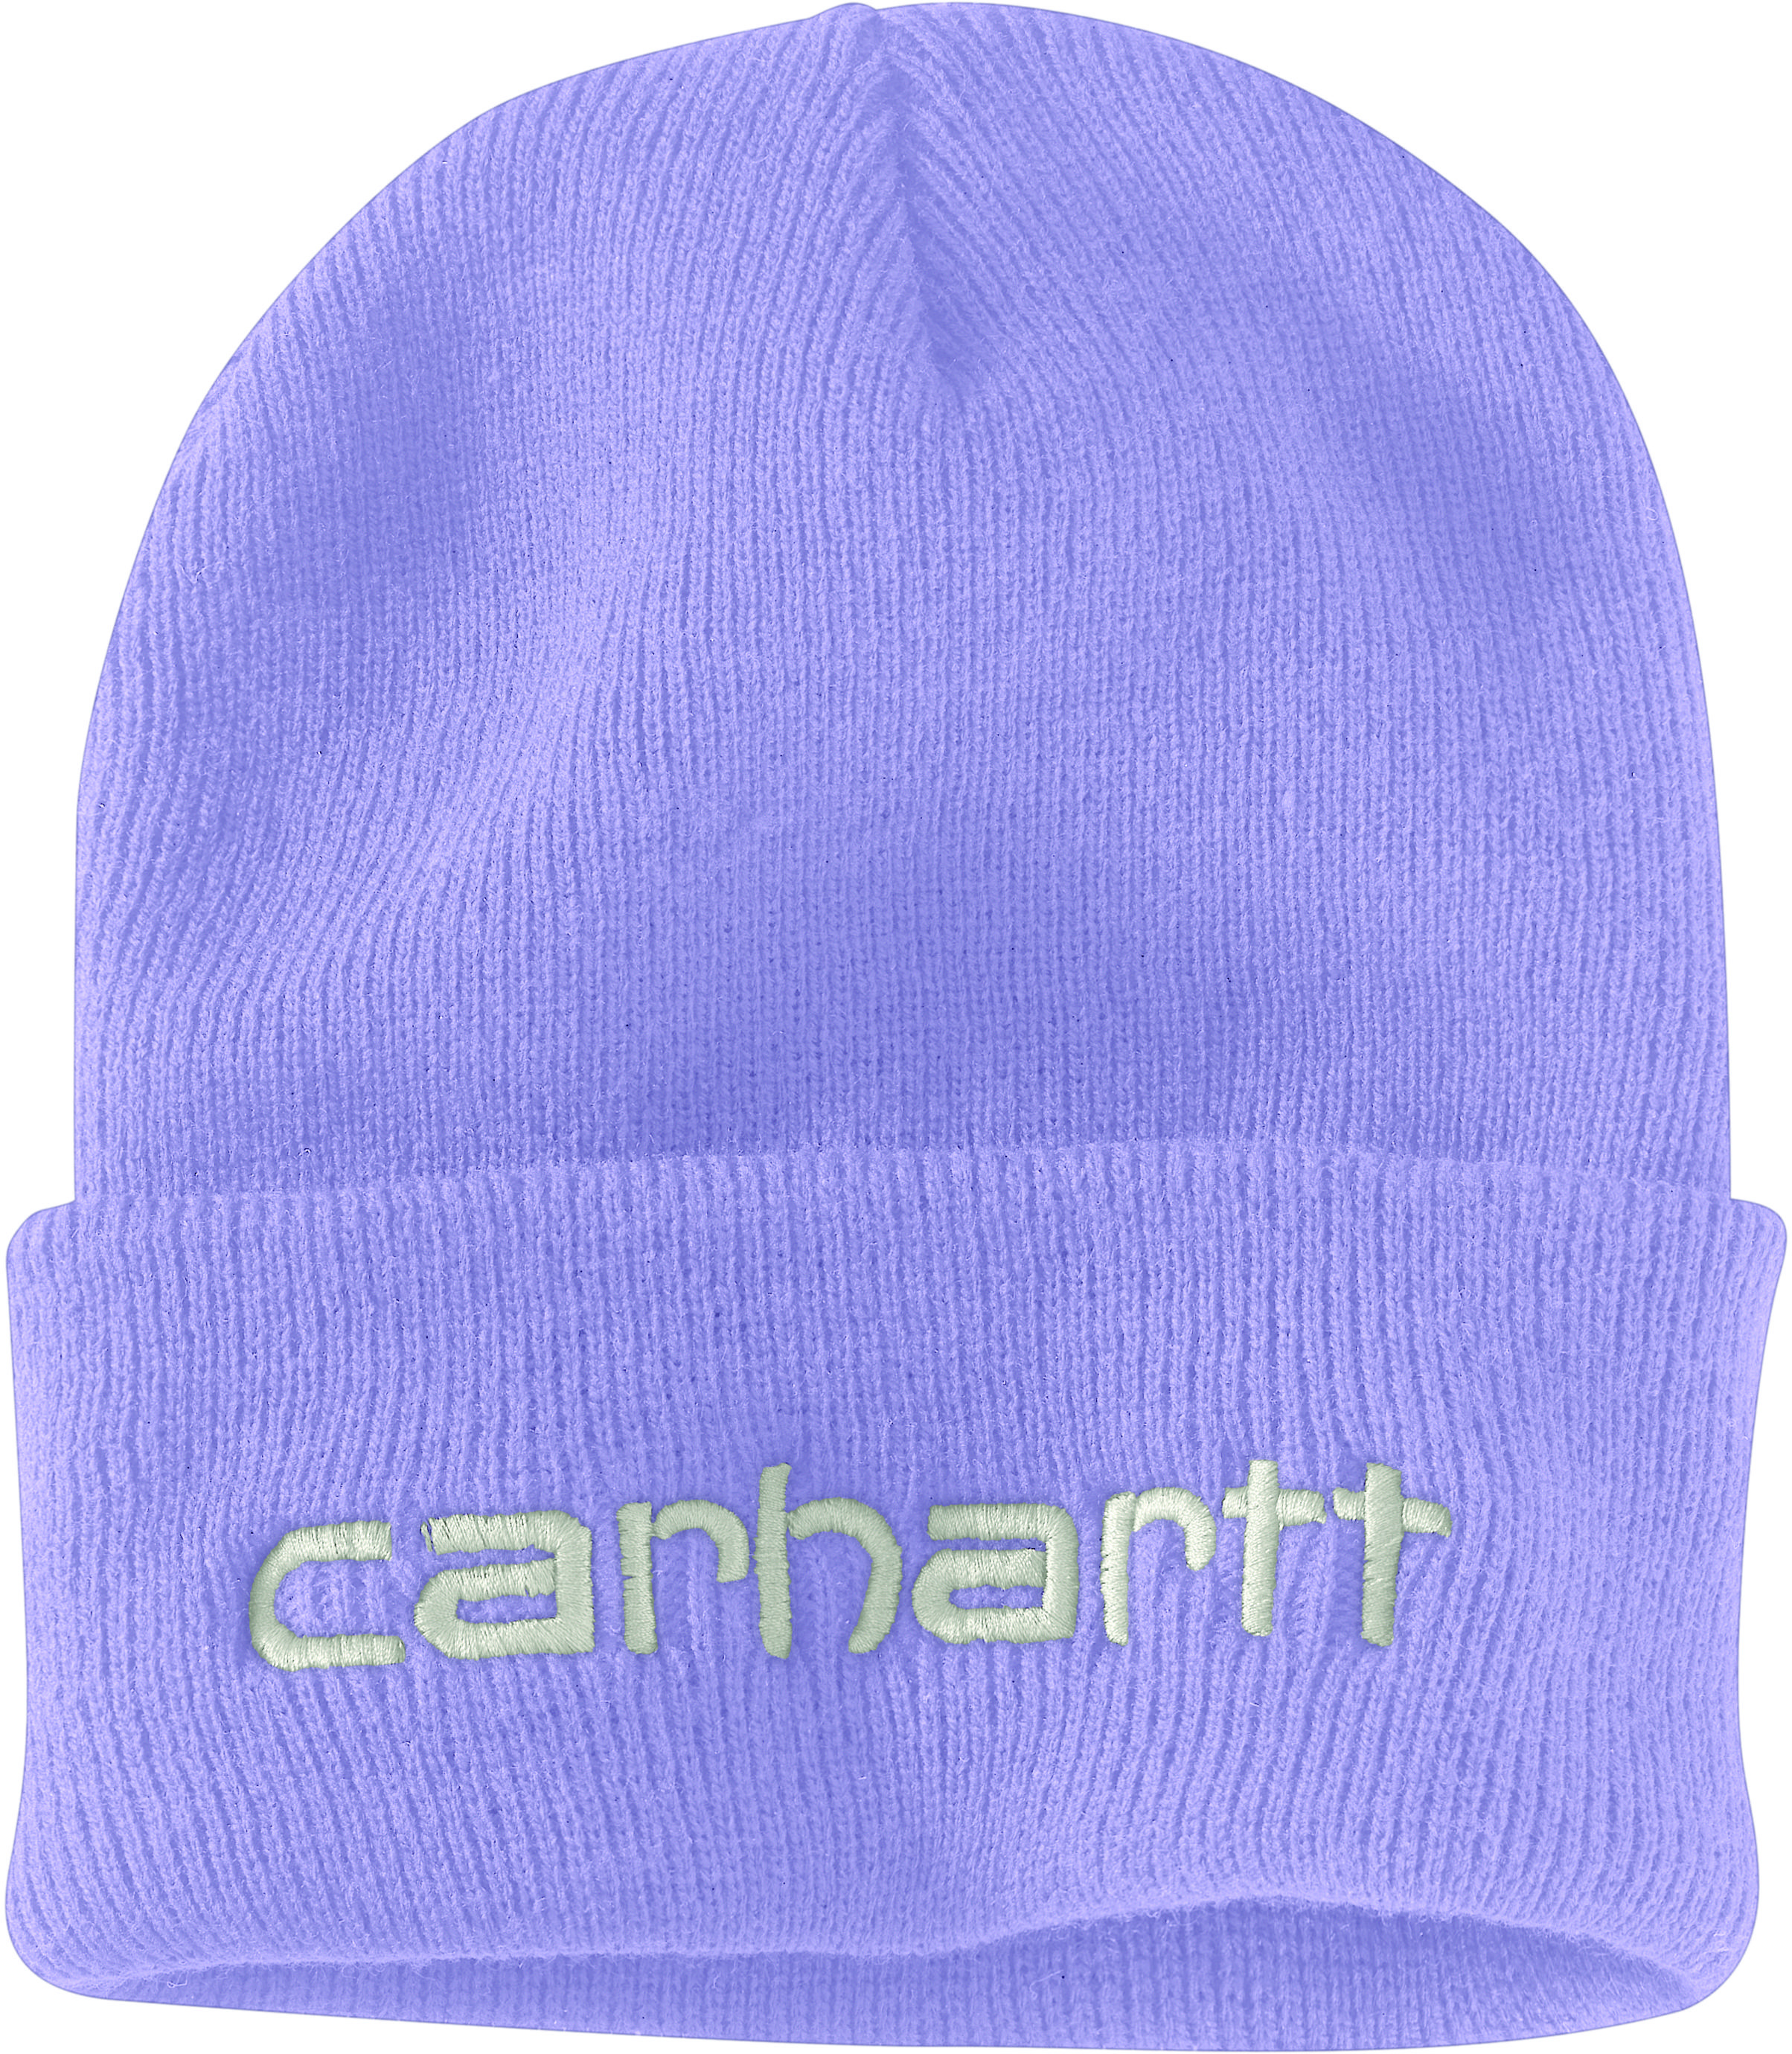 Вязаная утепленная шапка с логотипом и манжетами Carhartt